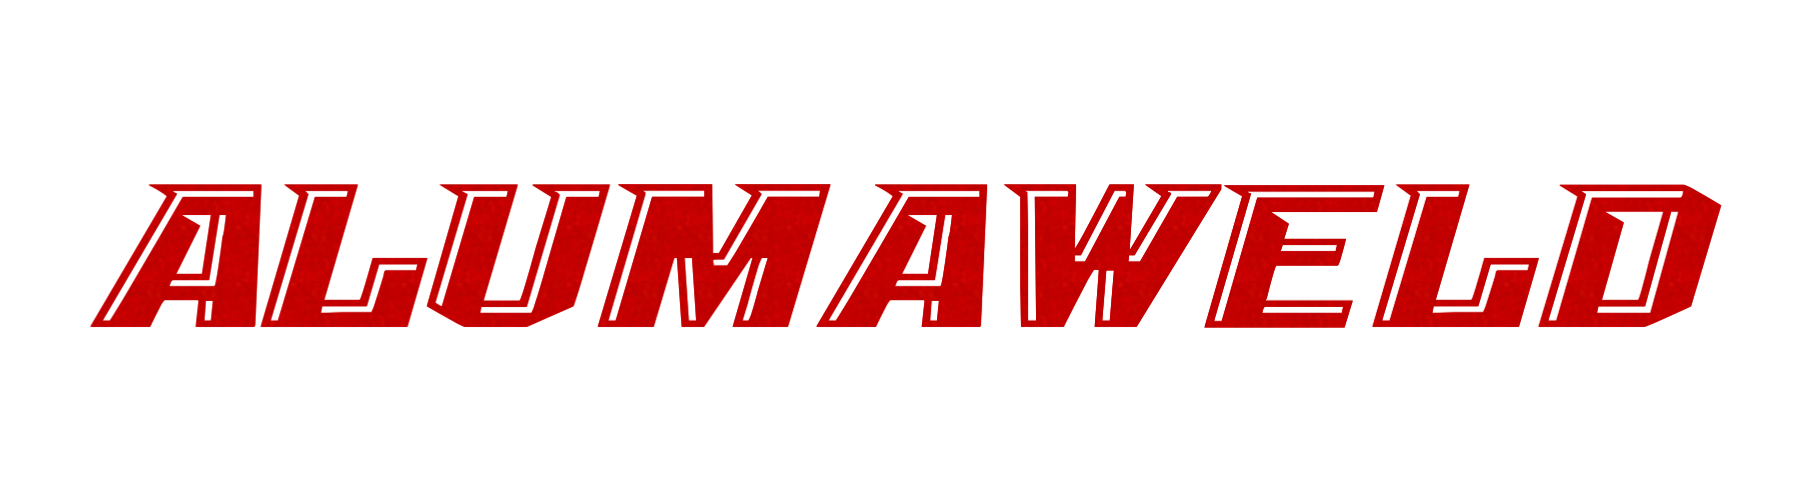 Alumaweld logo